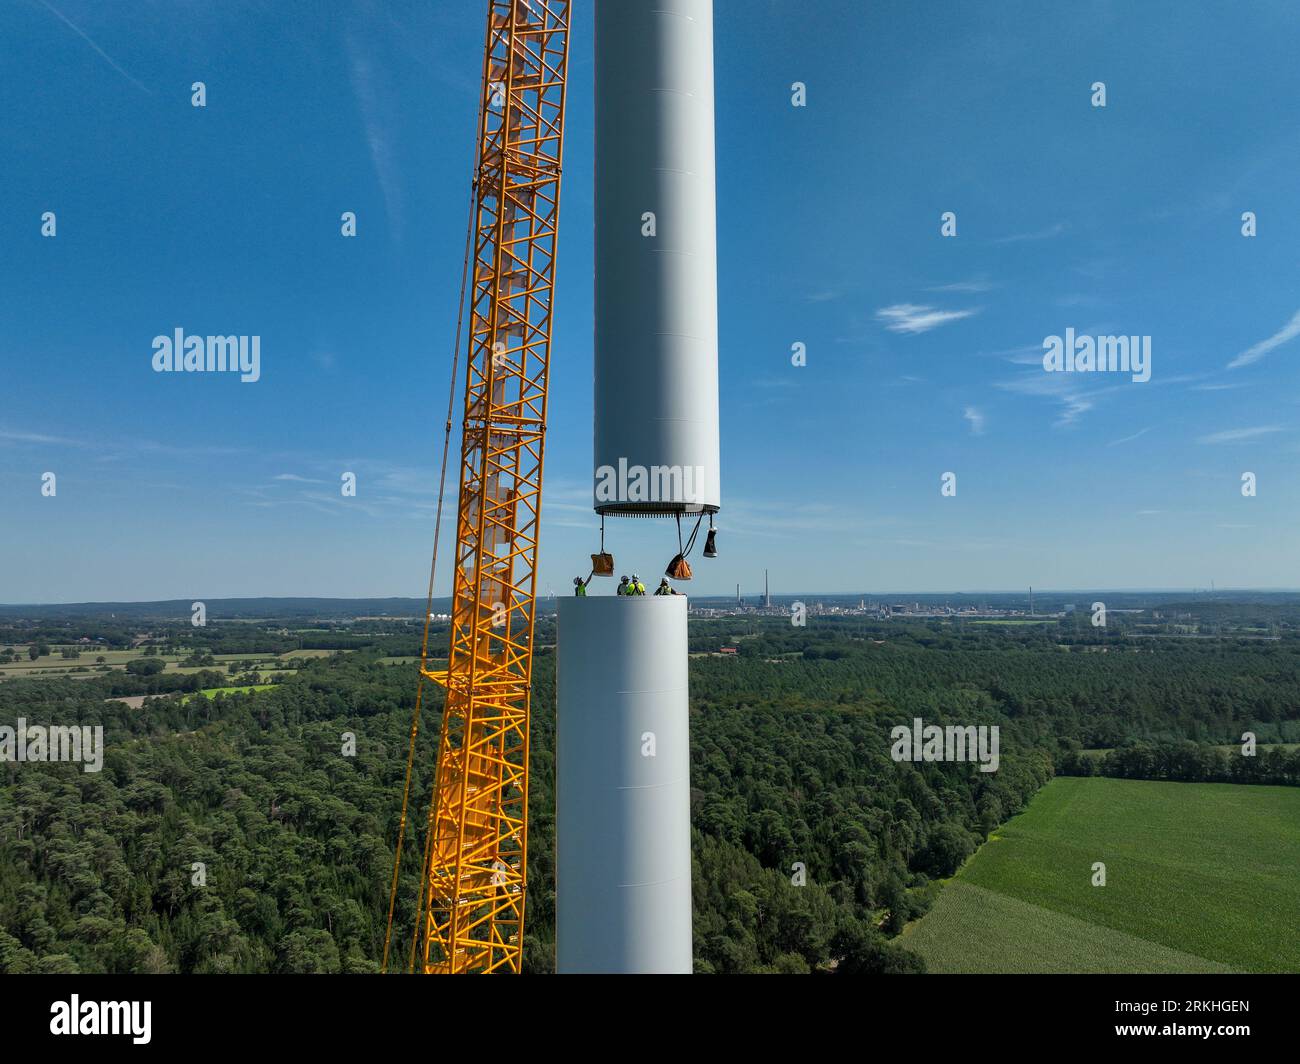 Dorsten, Renania settentrionale-Vestfalia, Germania - costruzione di una turbina eolica, la prima turbina eolica del parco eolico grosse Heide. Un grande cran mobile Foto Stock